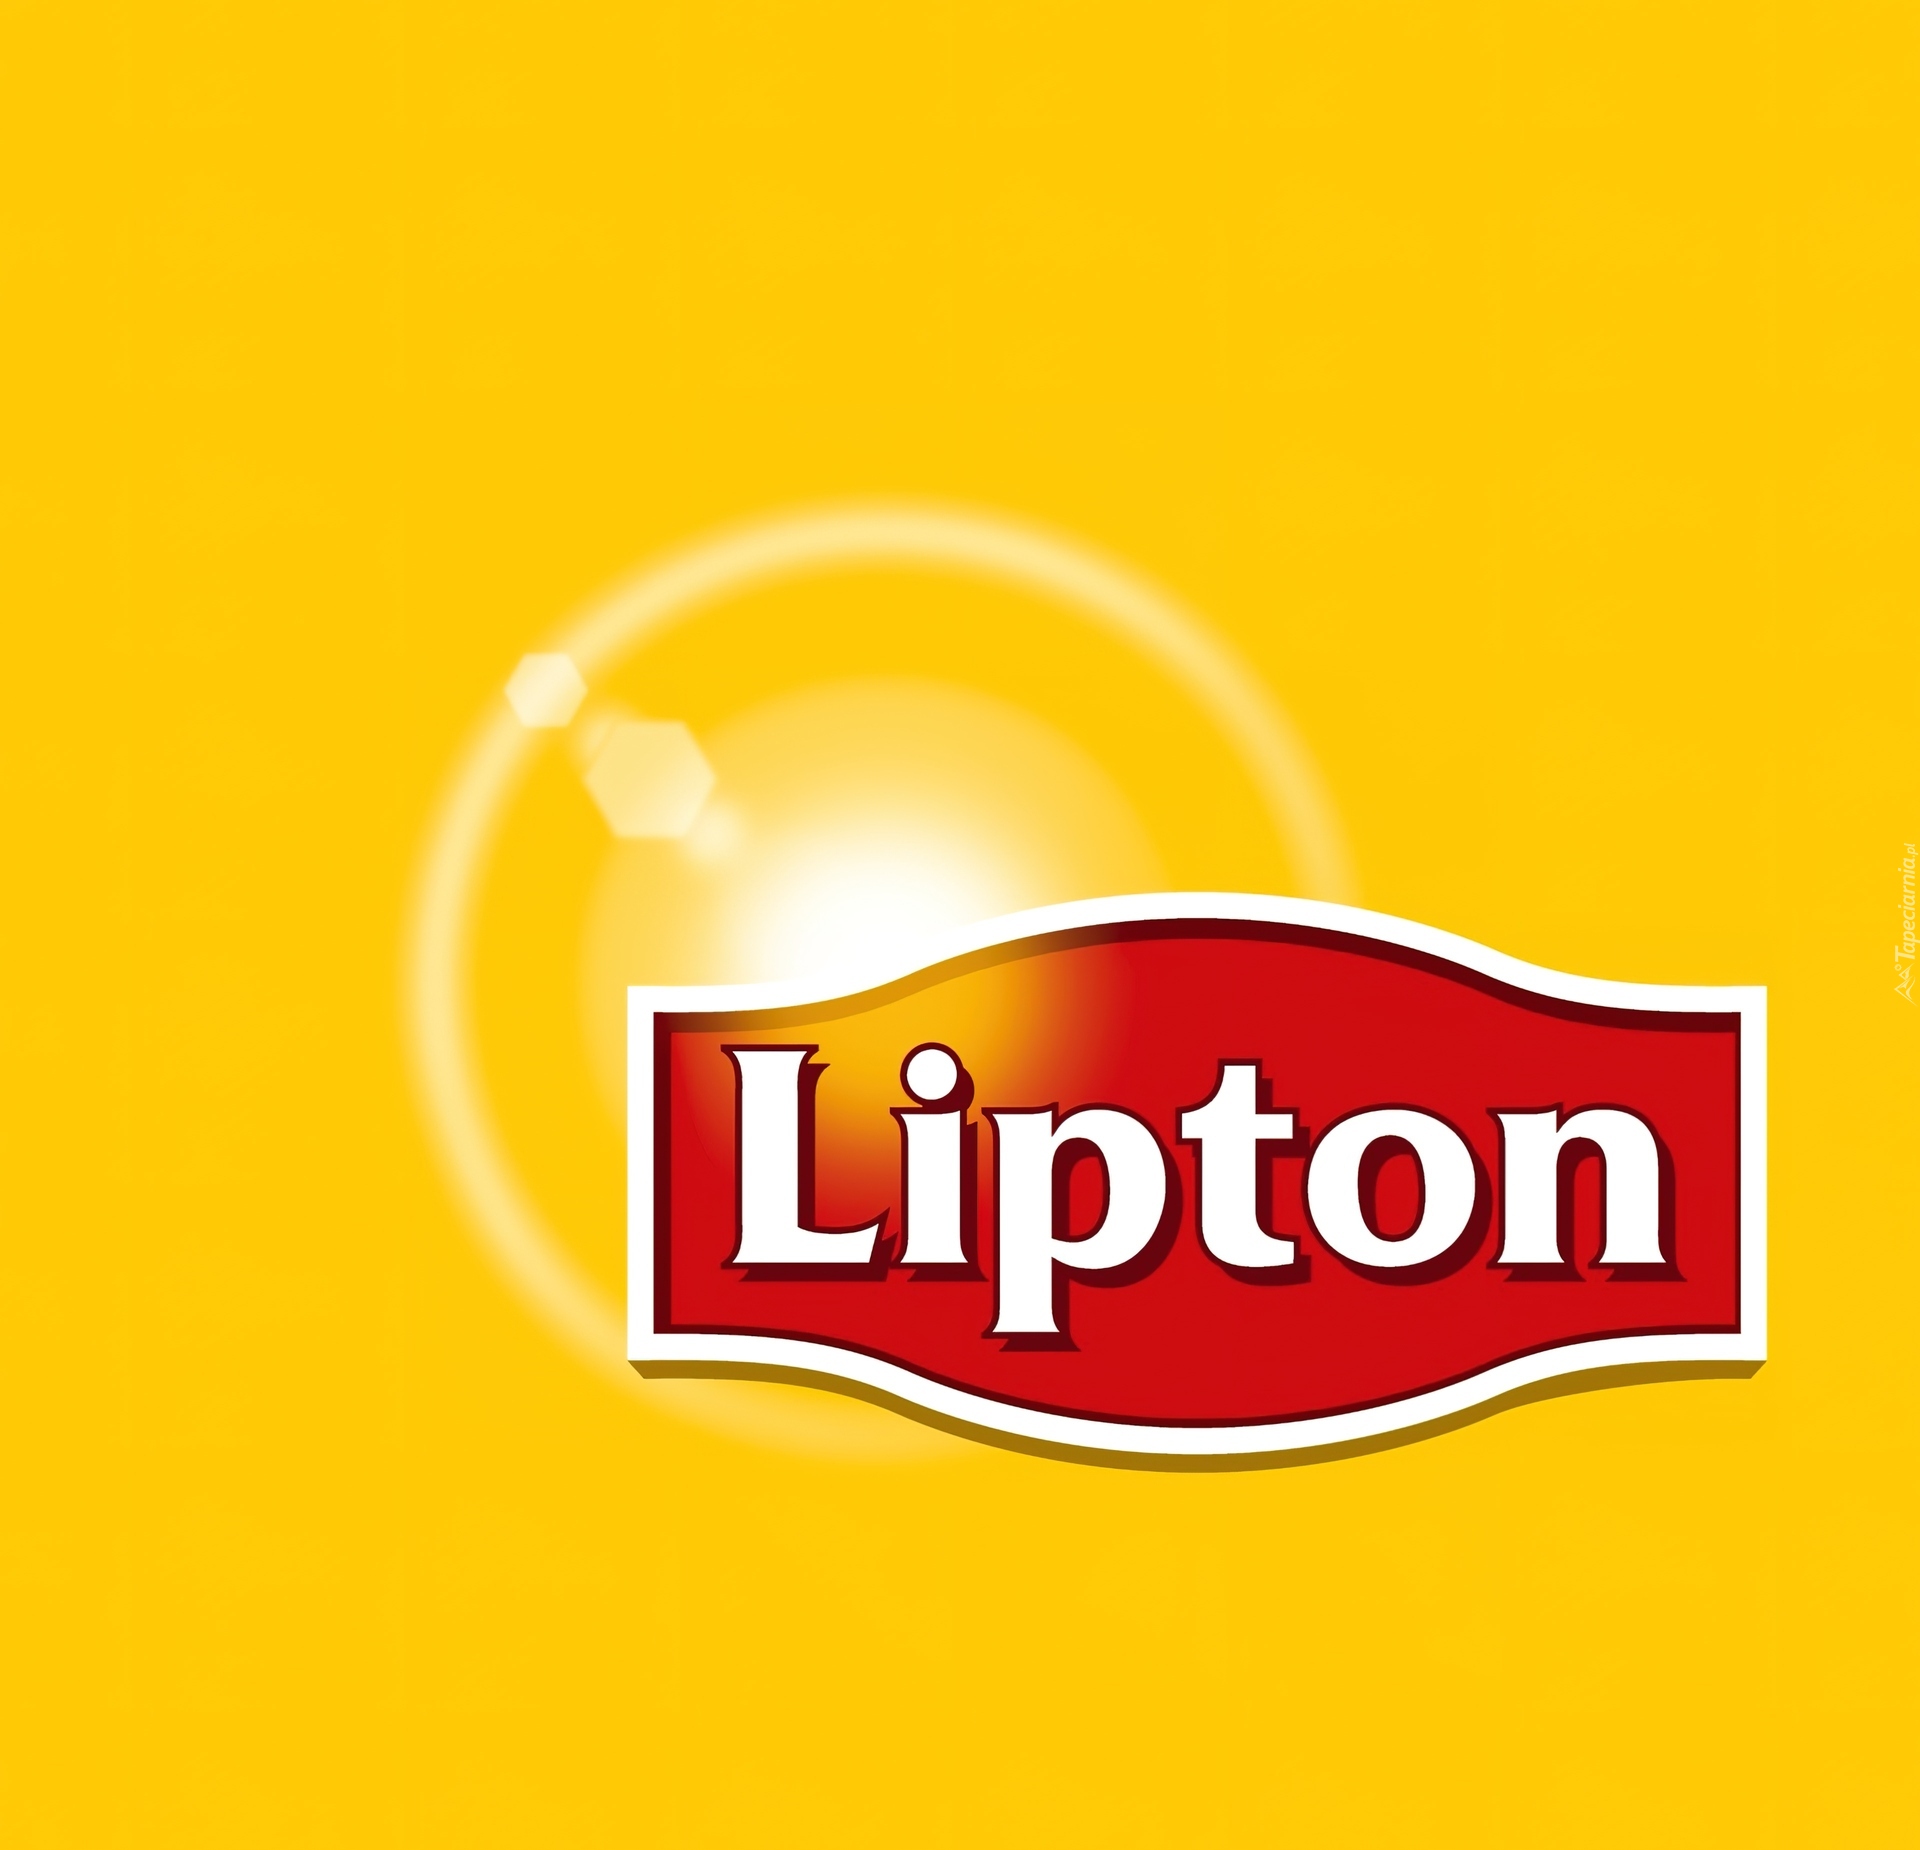 Logo, Lipton, Żółte, Tło